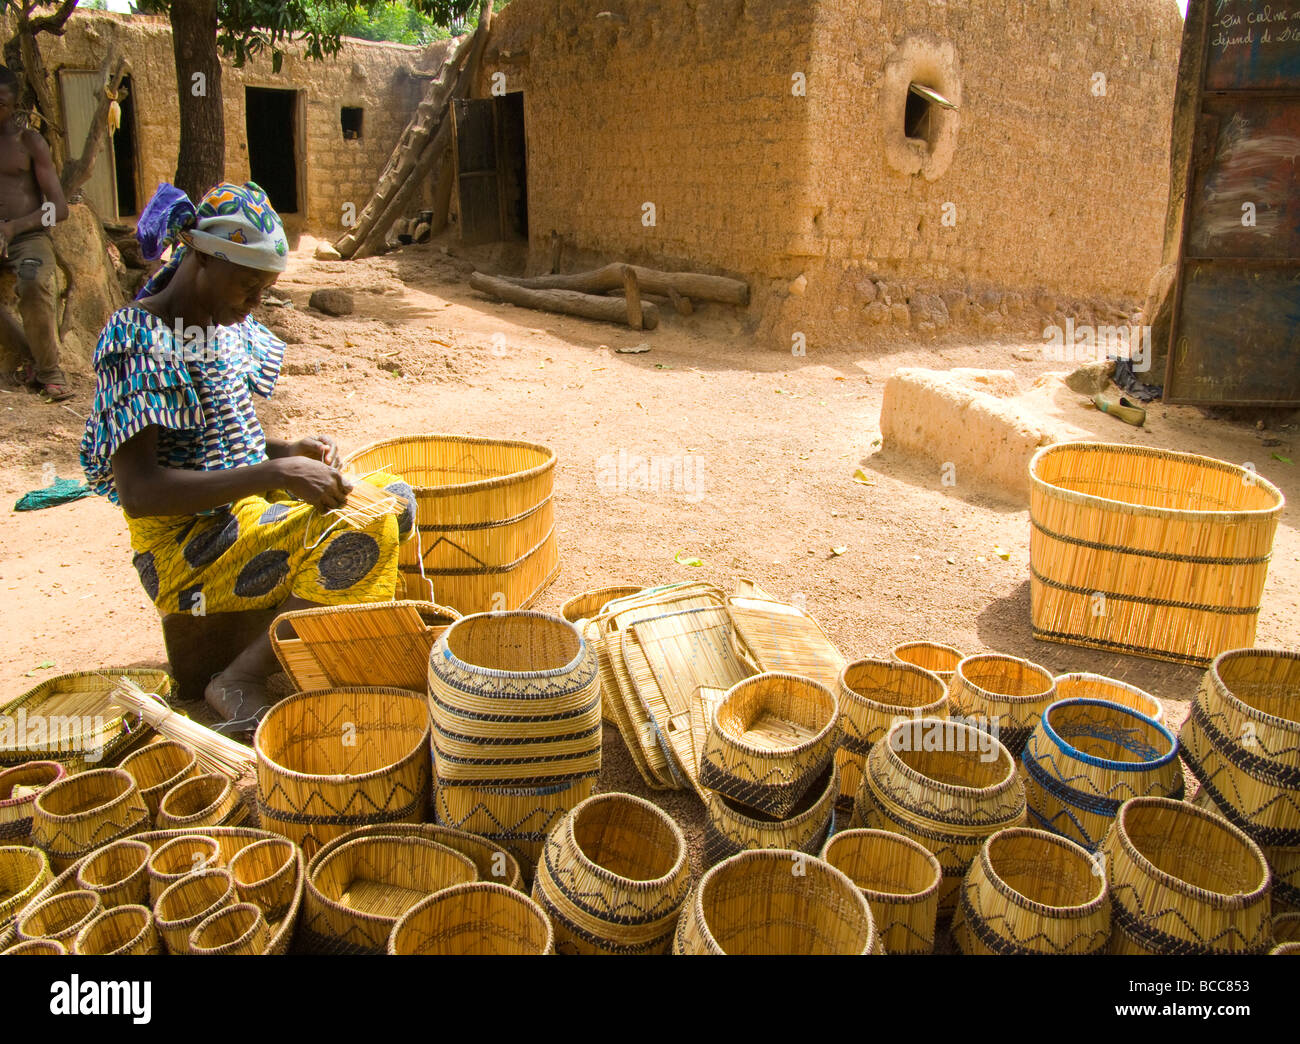 Burkina Faso. Lobi country. Craftswomen. Stock Photo